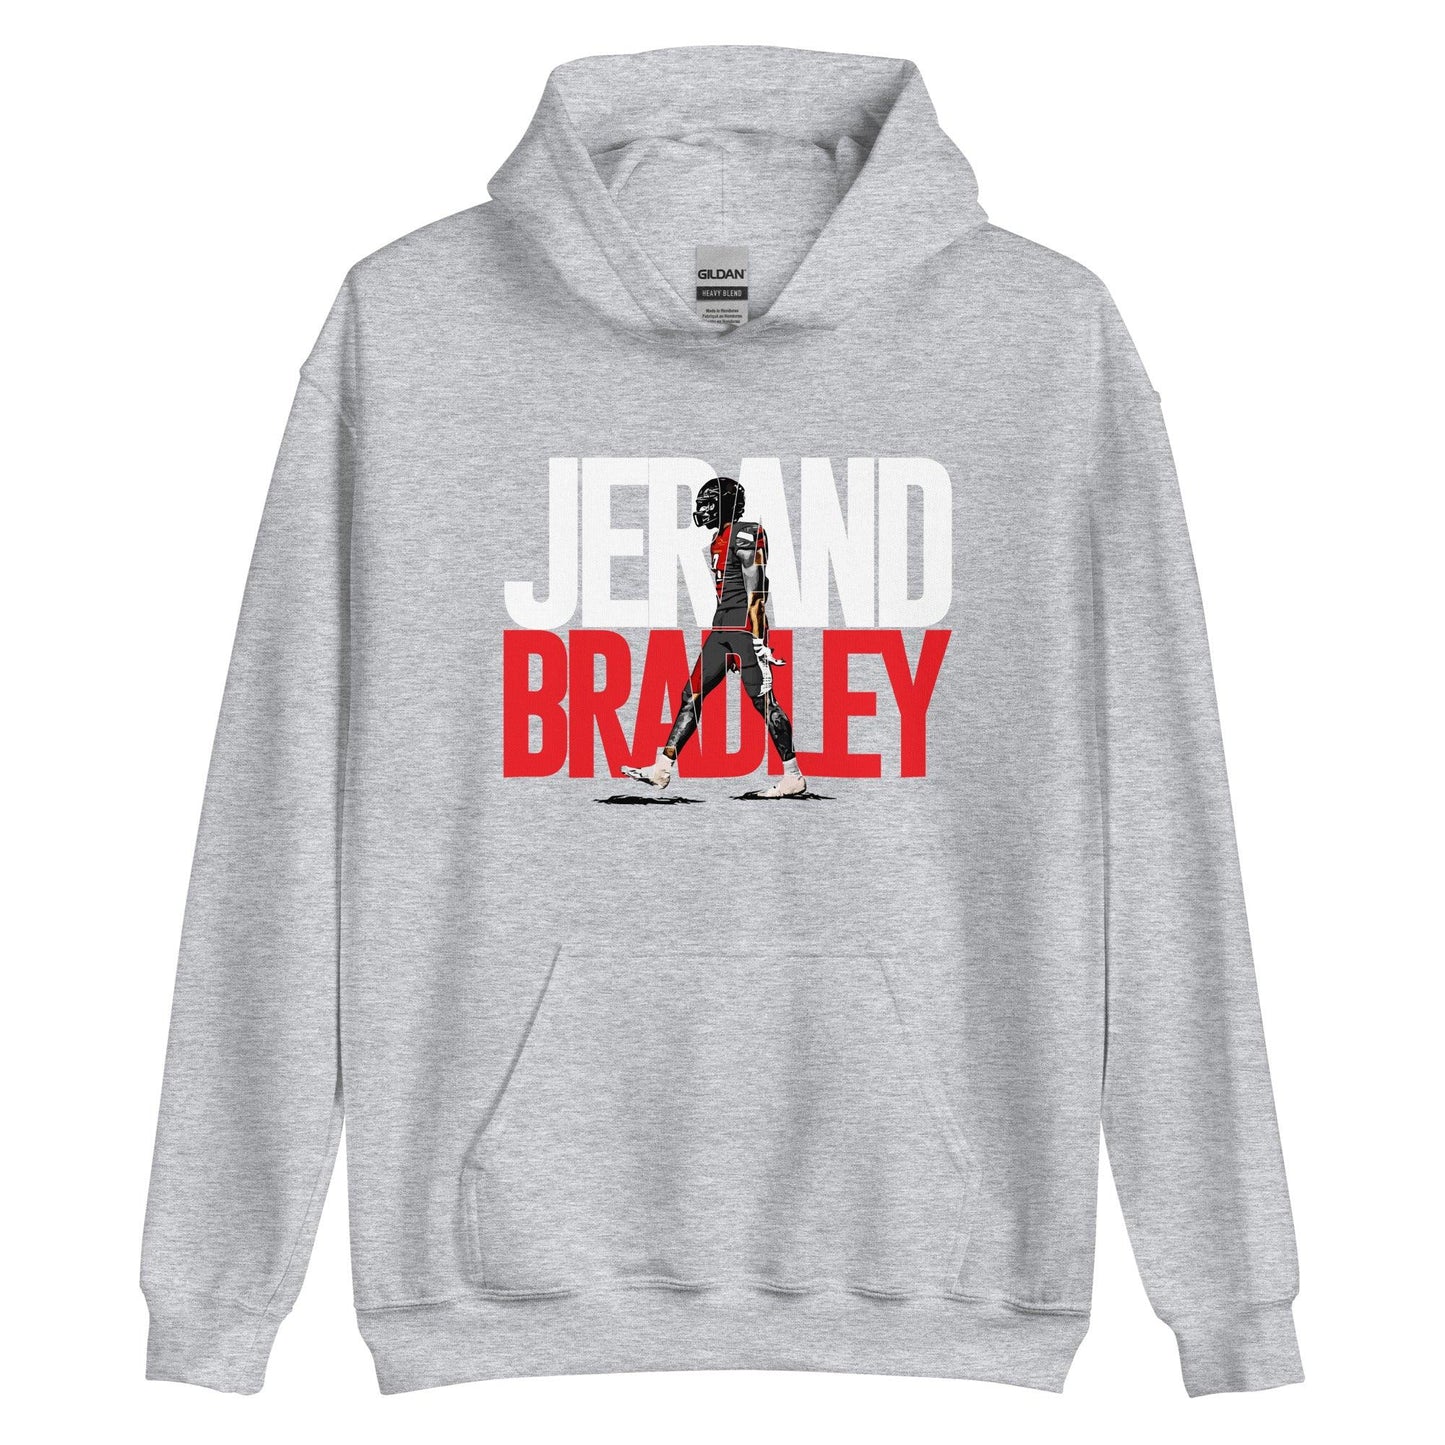 Jerand Bradley "Gameday" Hoodie - Fan Arch